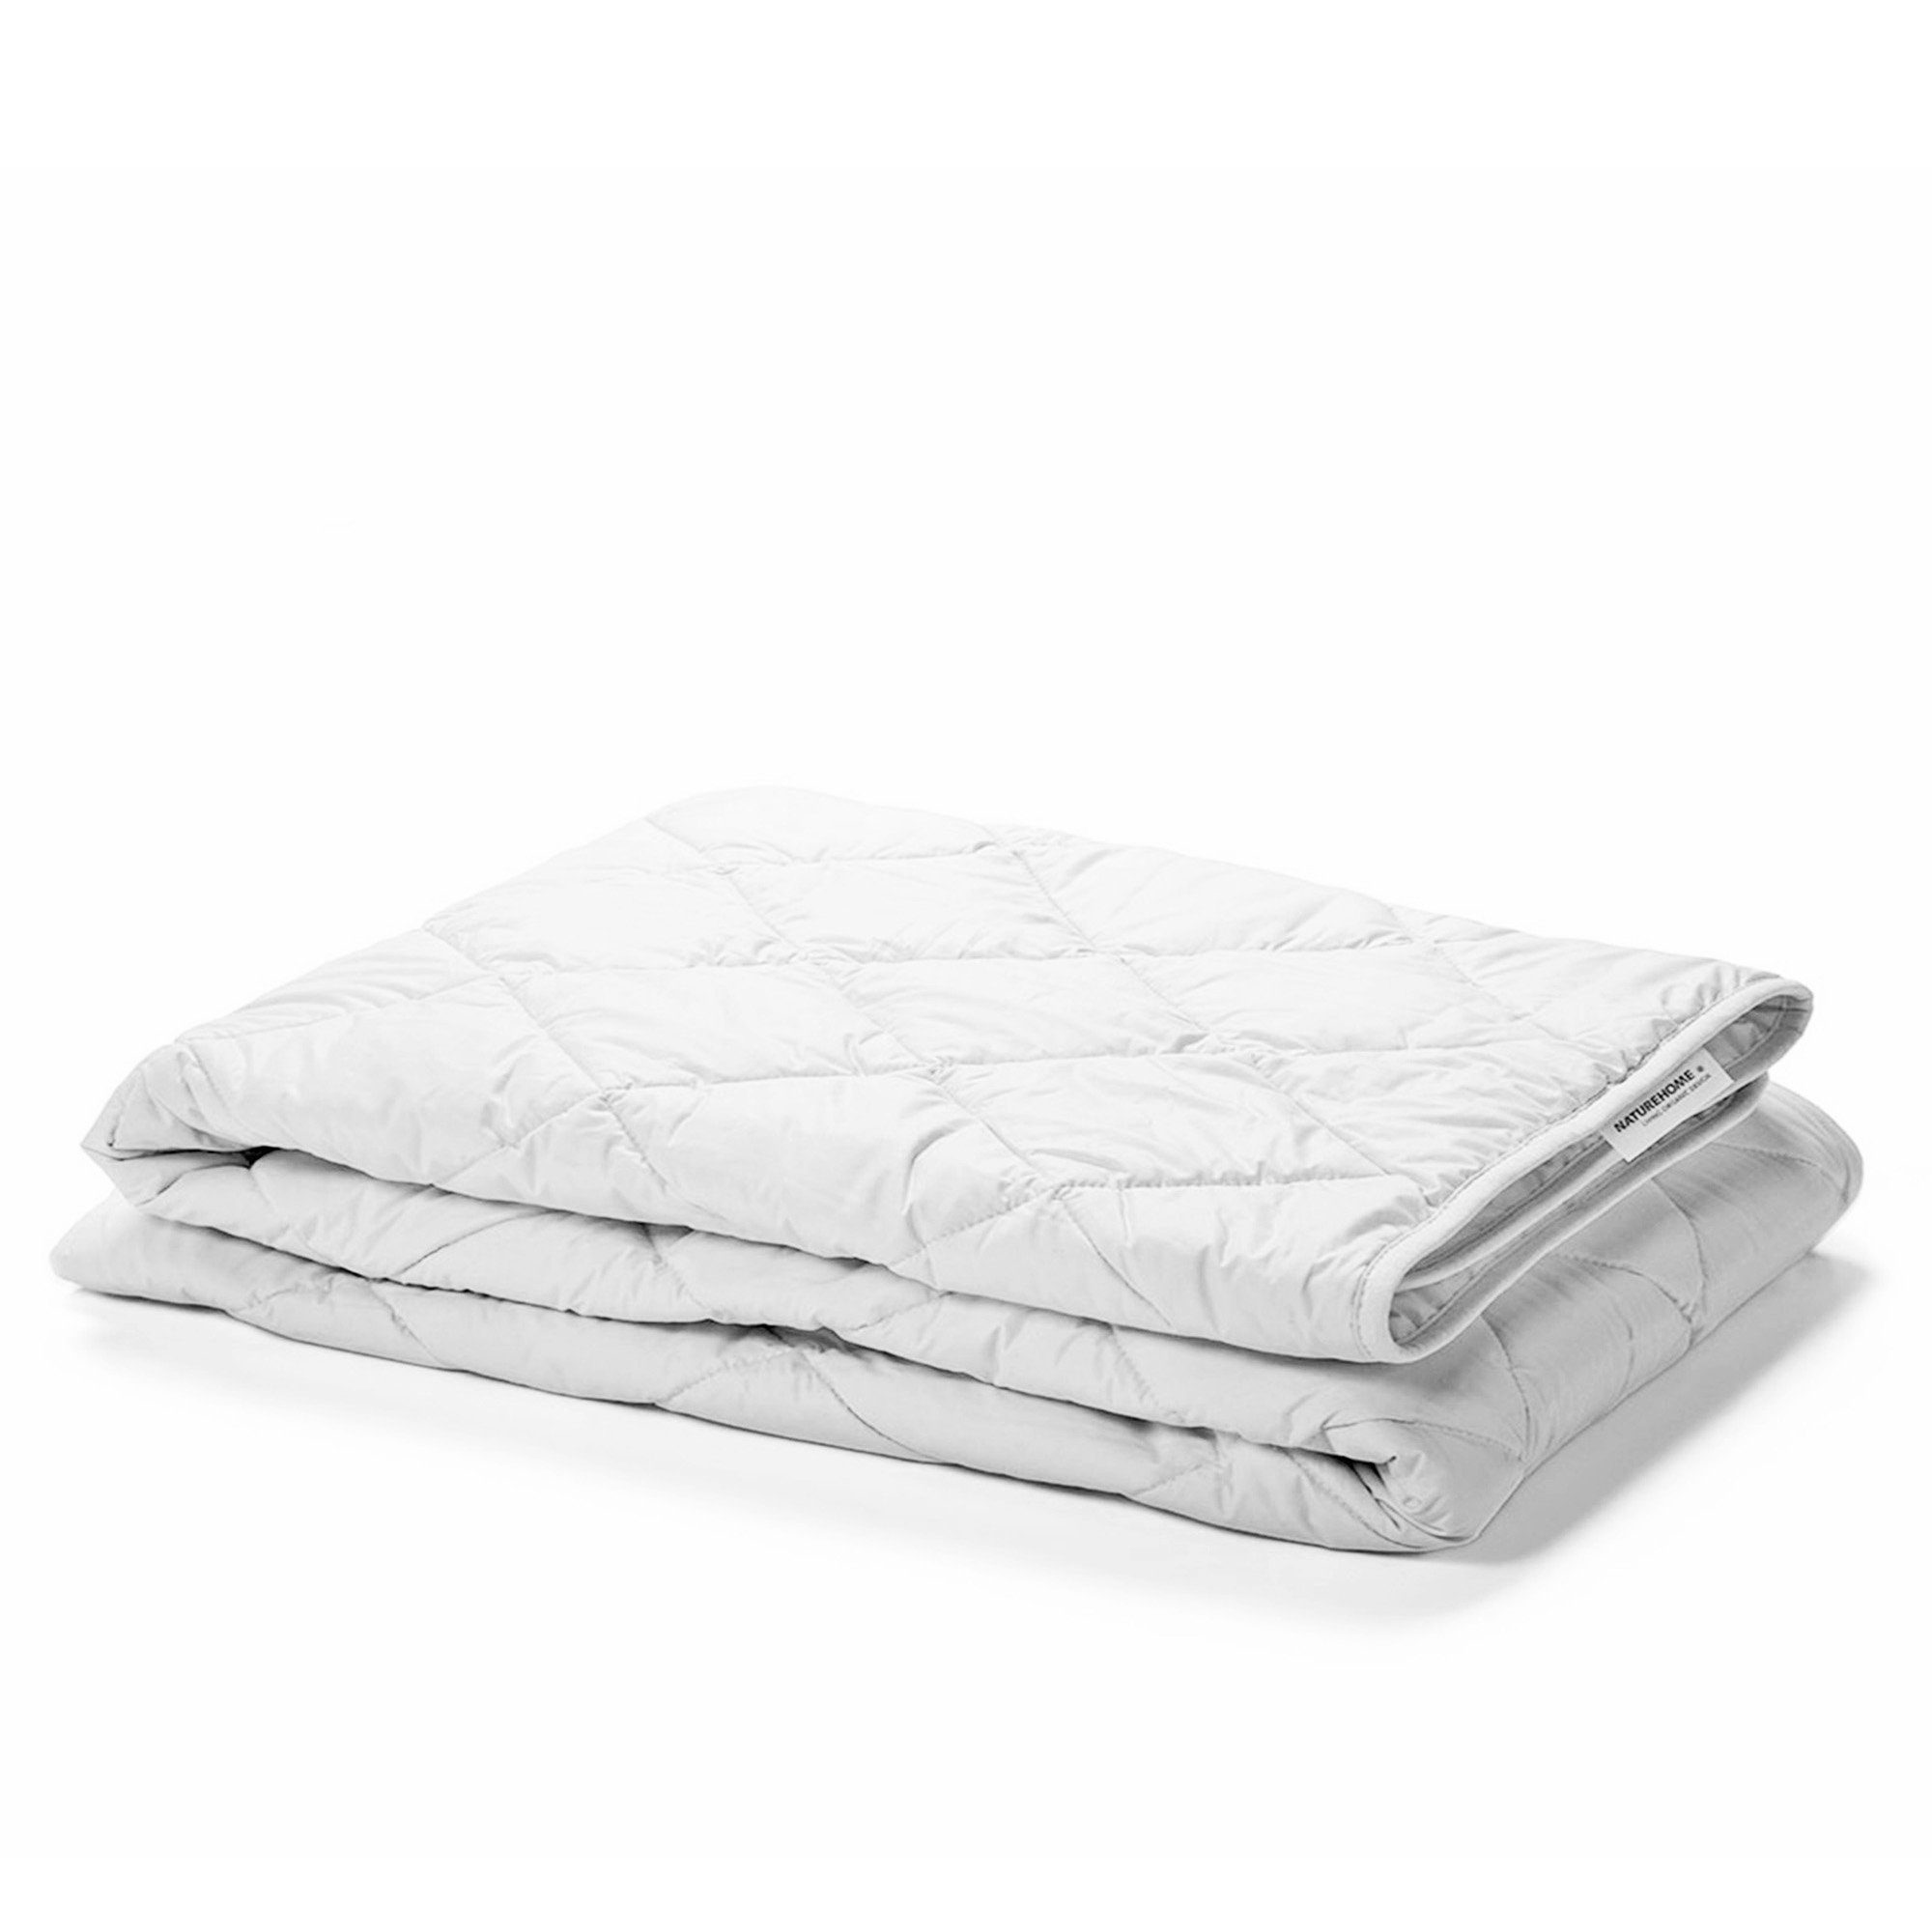 Tagesdecke Sommer-Bettdecke aus 135x200cm, Baumwolle, NATUREHOME 100